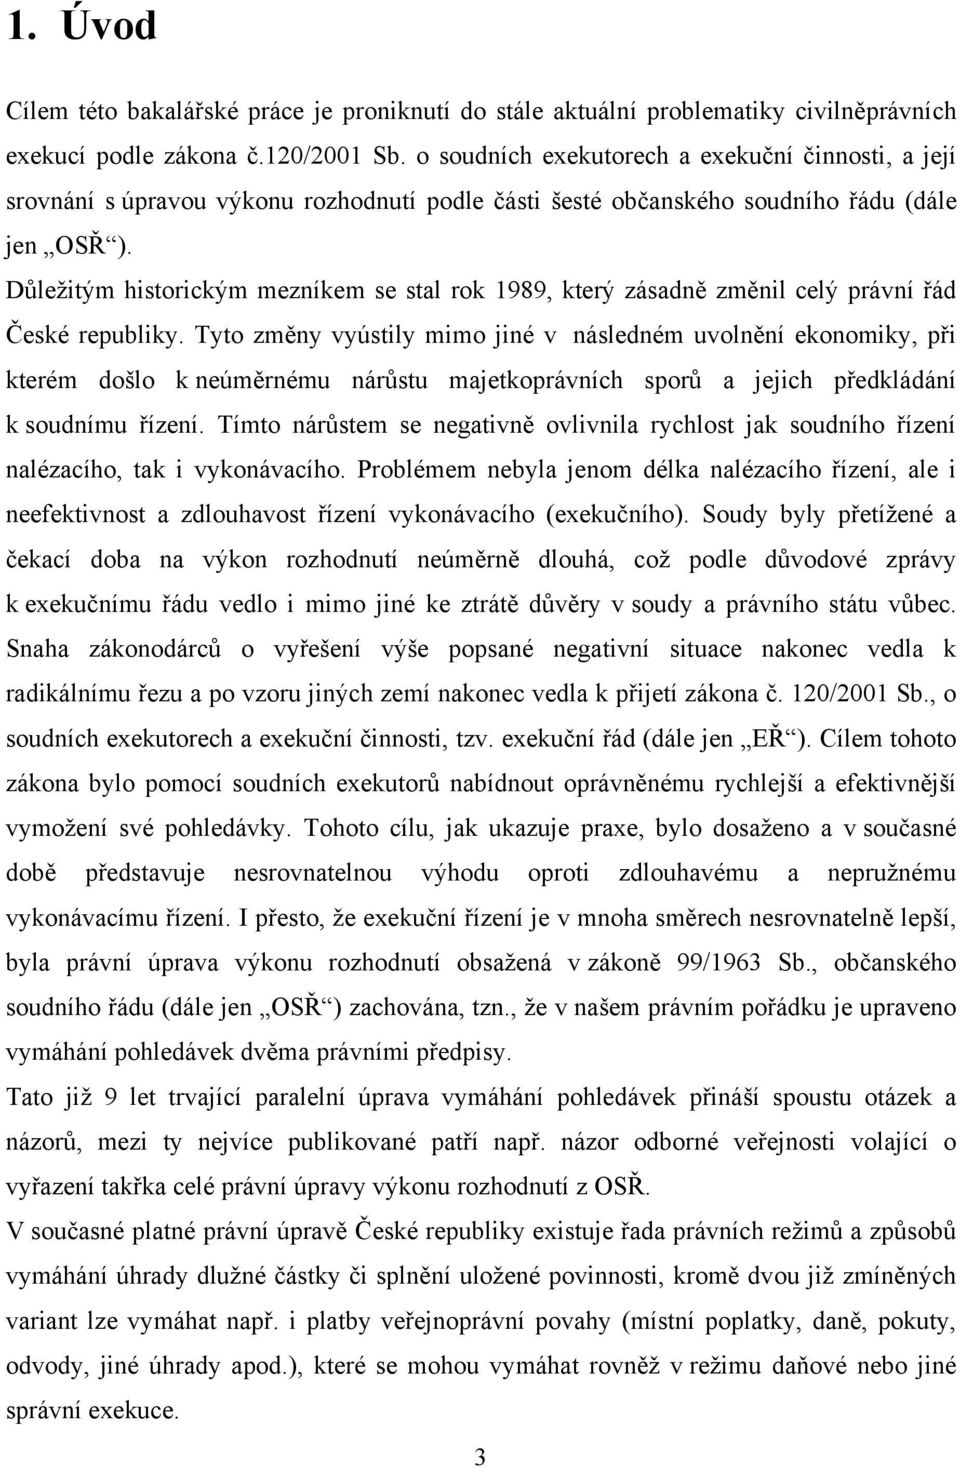 Důleţitým historickým mezníkem se stal rok 1989, který zásadně změnil celý právní řád České republiky.